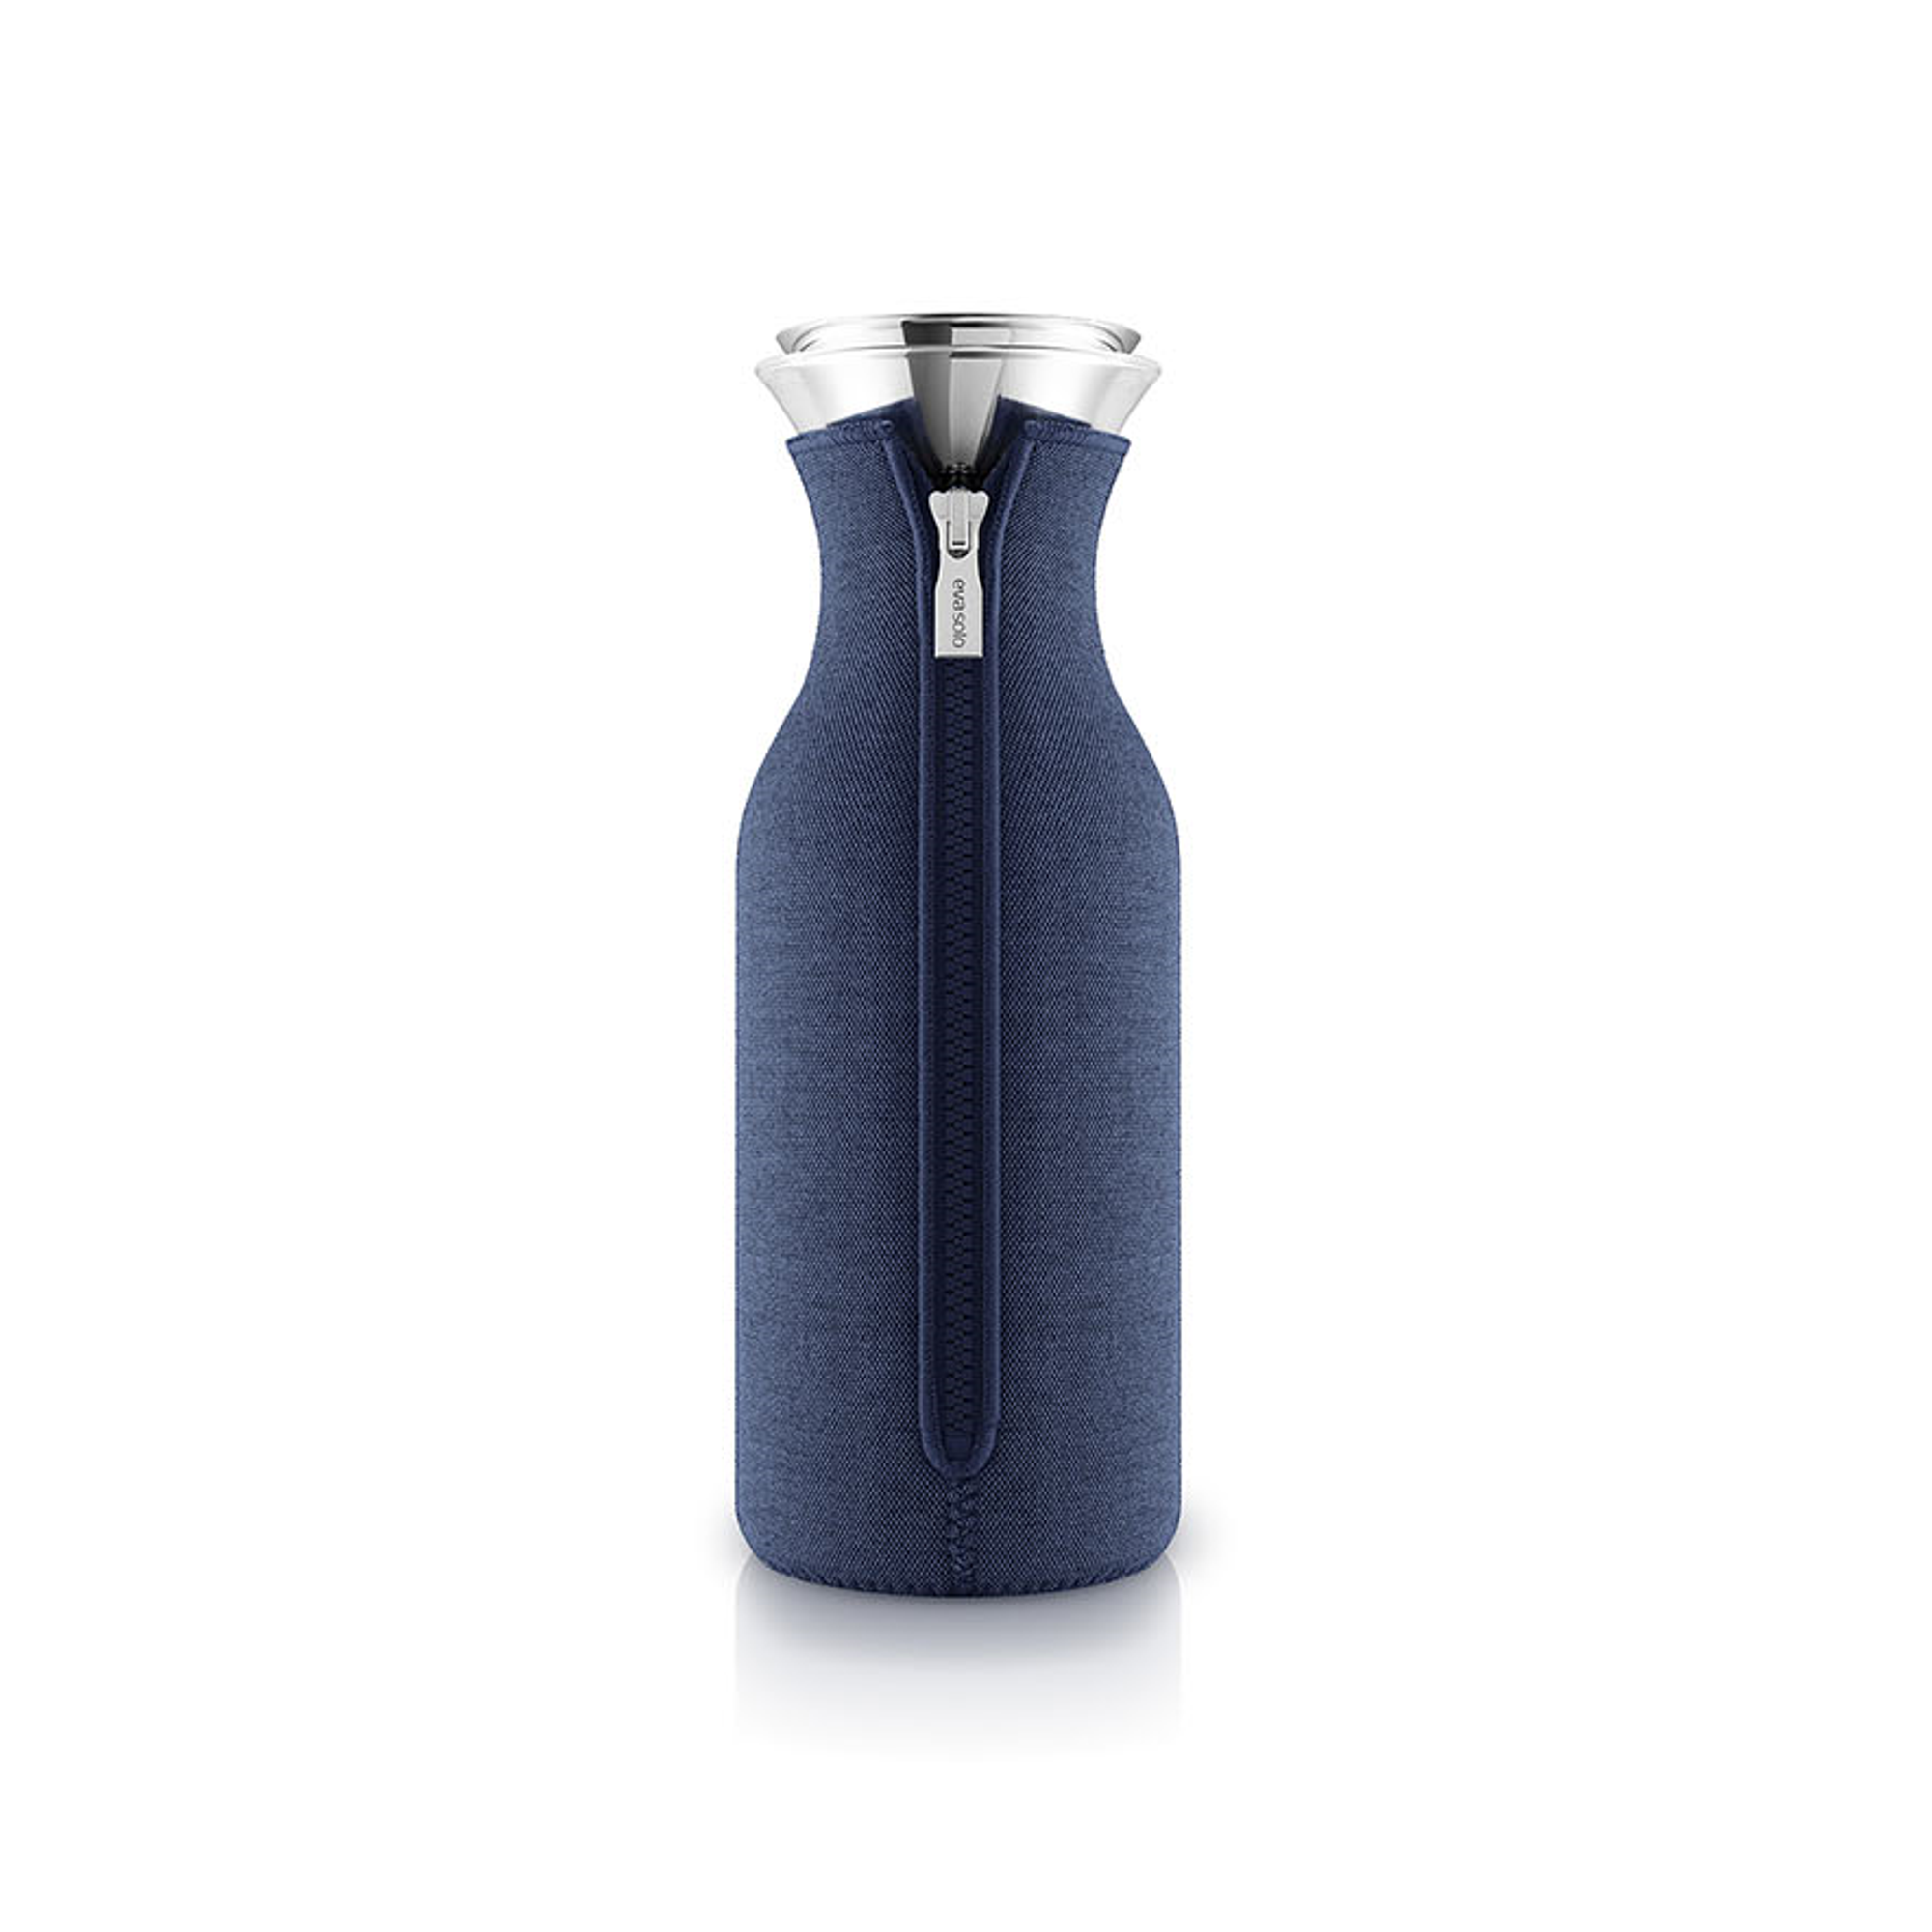 Carafe pour réfrigérateur - 1 litre - Bleu marine